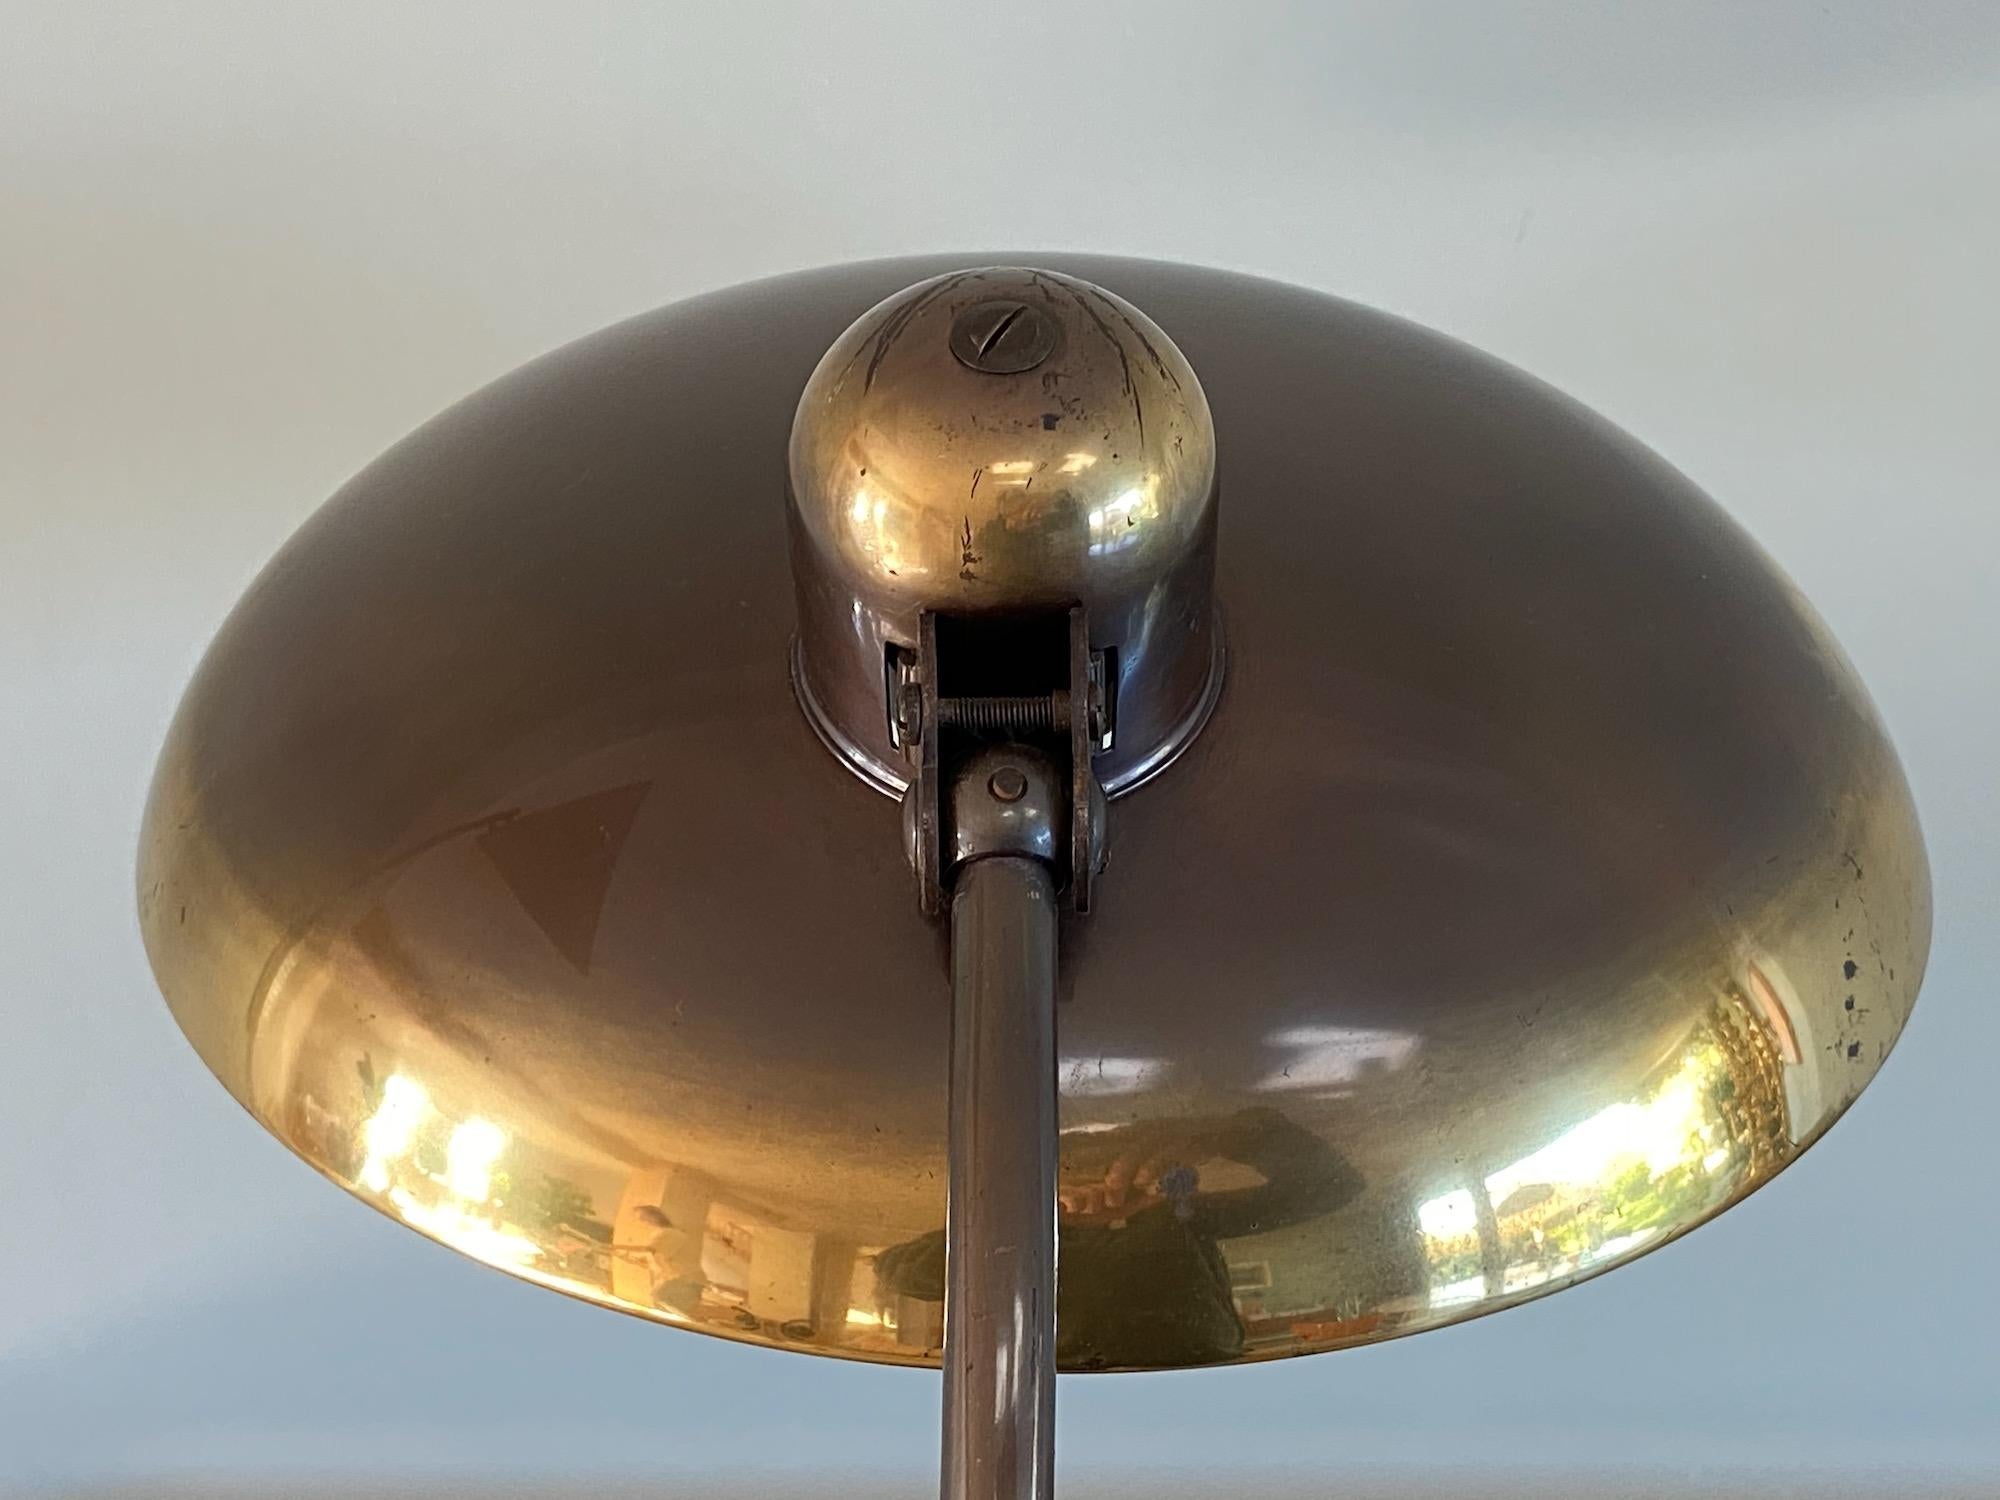 Christian Dell Brass Table Lamp 6631 Desk Lamp by Kaiser Idell Bauhaus, Germany 3